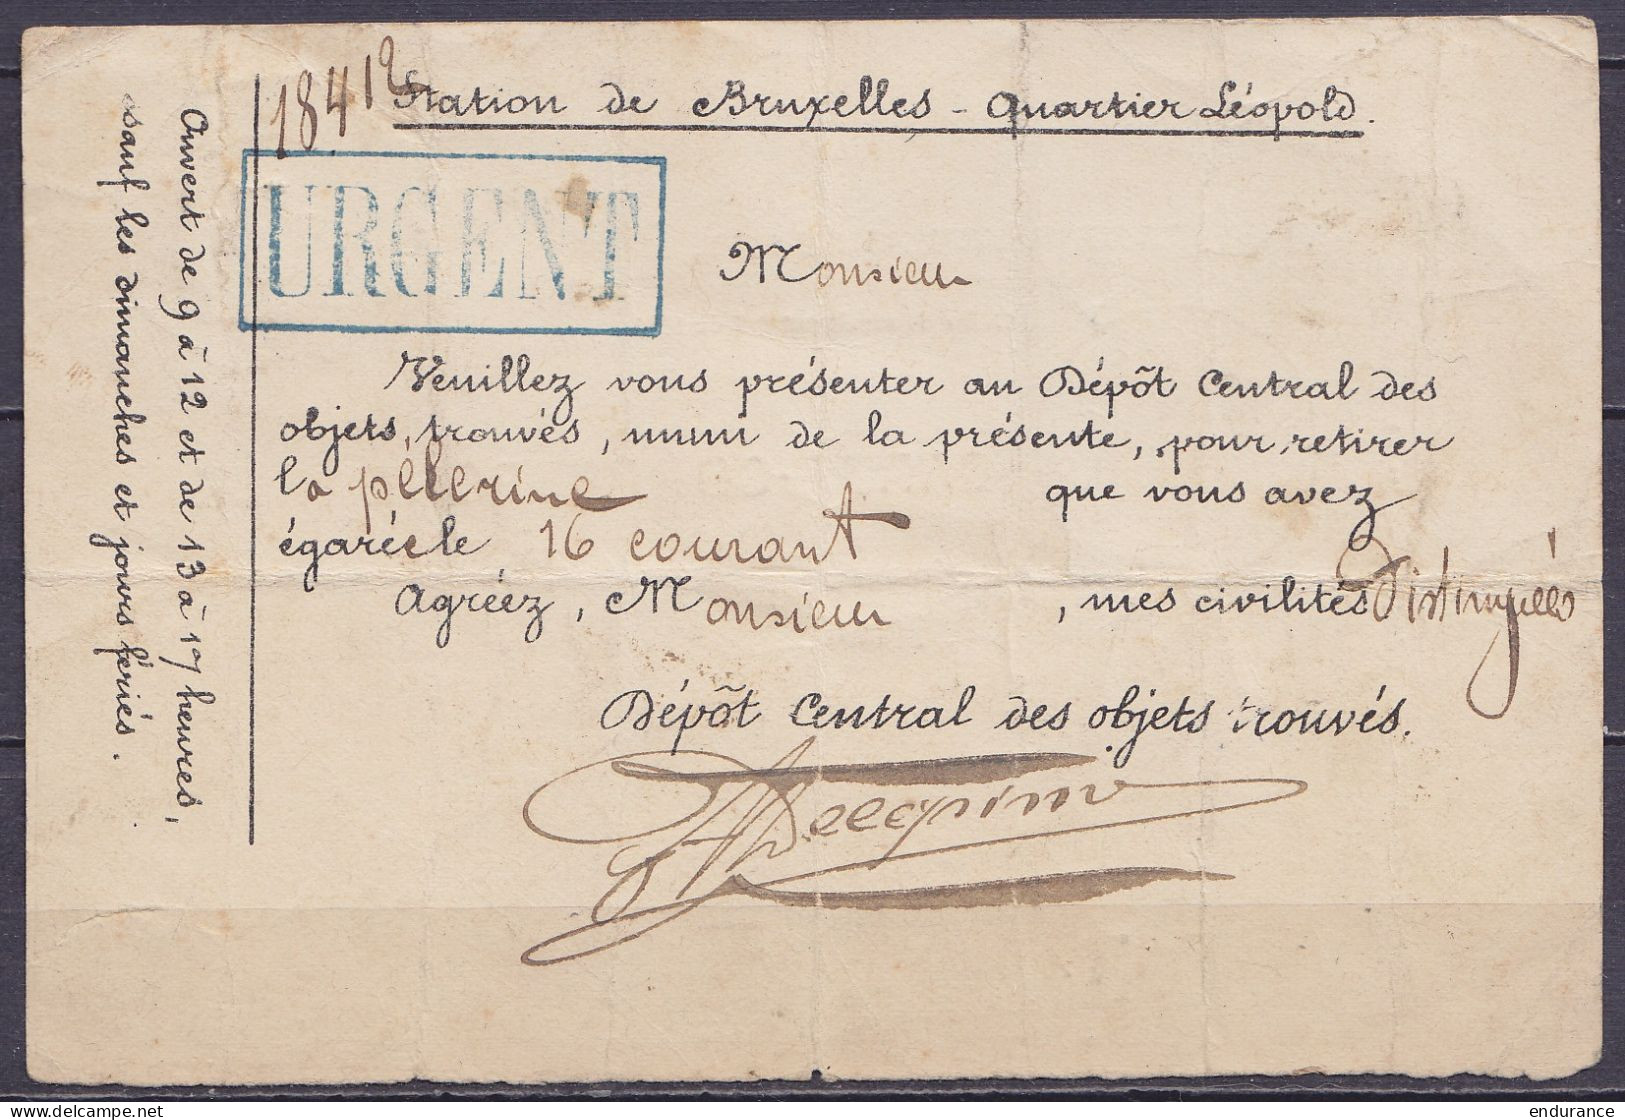 Rare Carte-correpondance De Service En Exprès Affr N°60 (franchise Partielle) Càd Octogon. "BRUXELLES (QUARTIER LEOPOLD) - 1893-1900 Fijne Baard